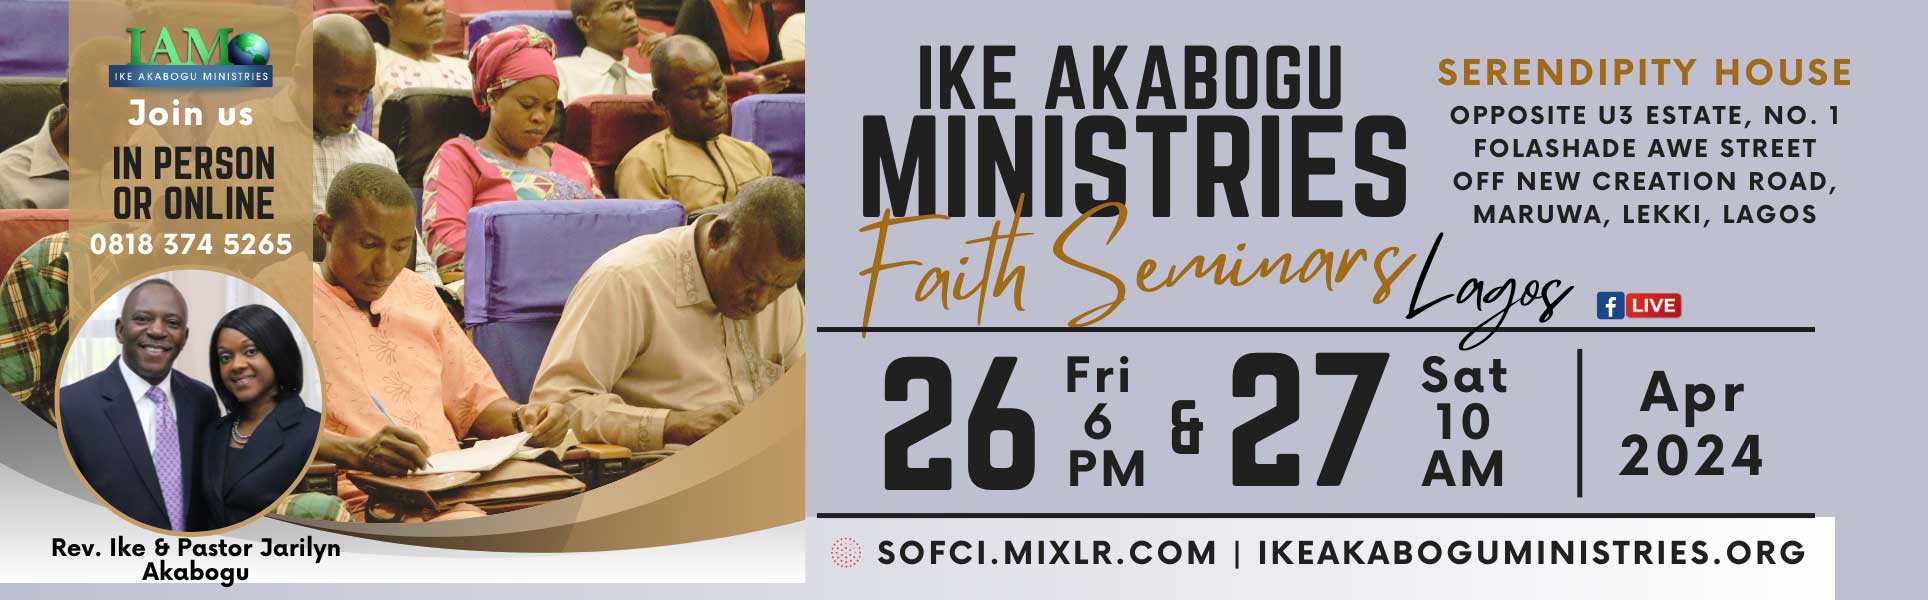 Ike Akabogu ministries Faith Seminar